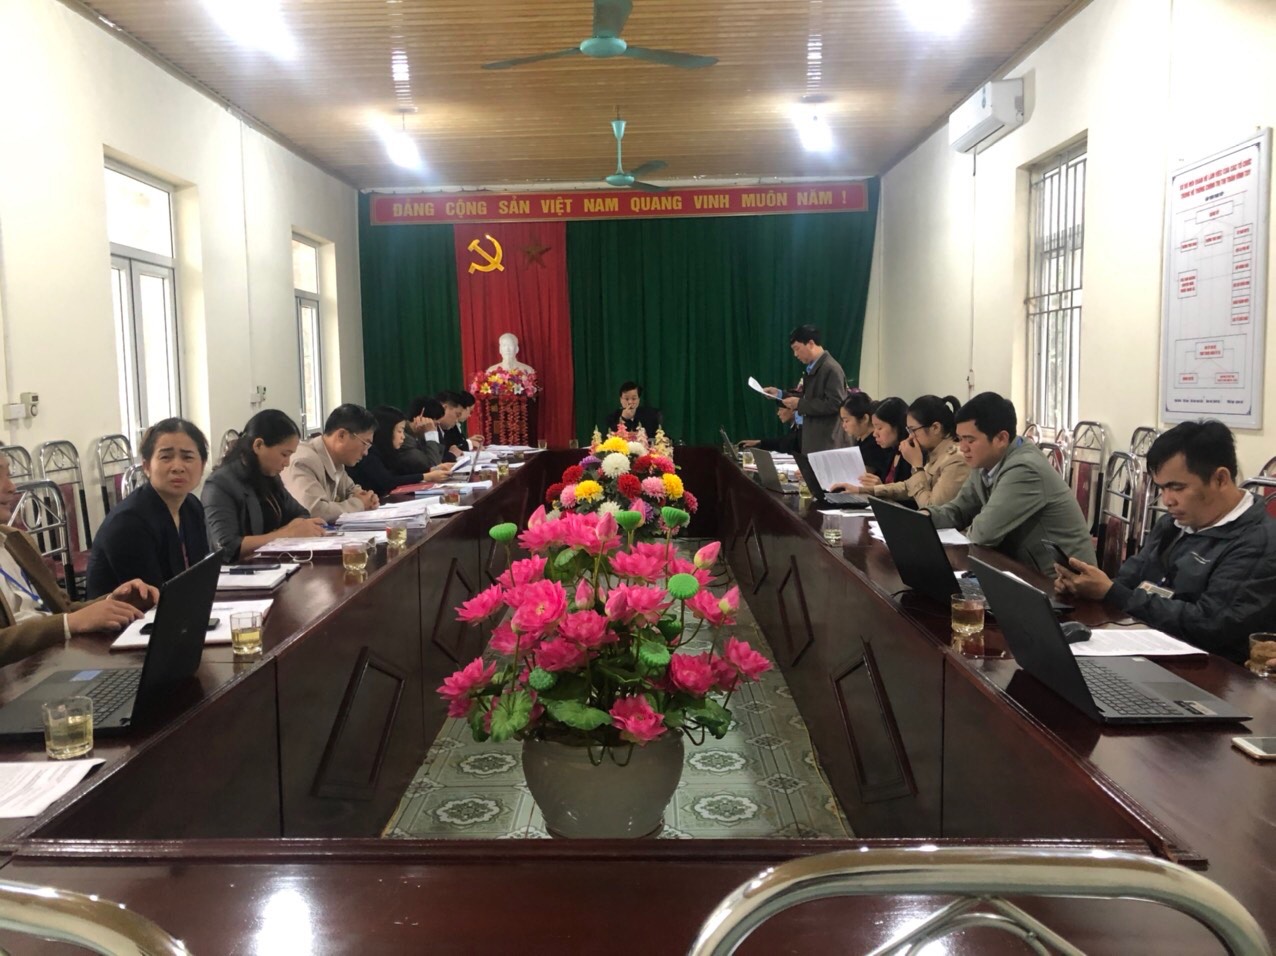 Đồng chí Trần Quang Minh, Ủy viên Ban Thường vụ Tỉnh ủy, Chủ nhiệm Ủy ban Kiểm tra Tỉnh kiểm tra công tác lãnh, chỉ đạo thực hiện công tác bầu cử Đại biểu Quốc Hội và HĐND các cấp tại thị trấn Vĩnh Tuy